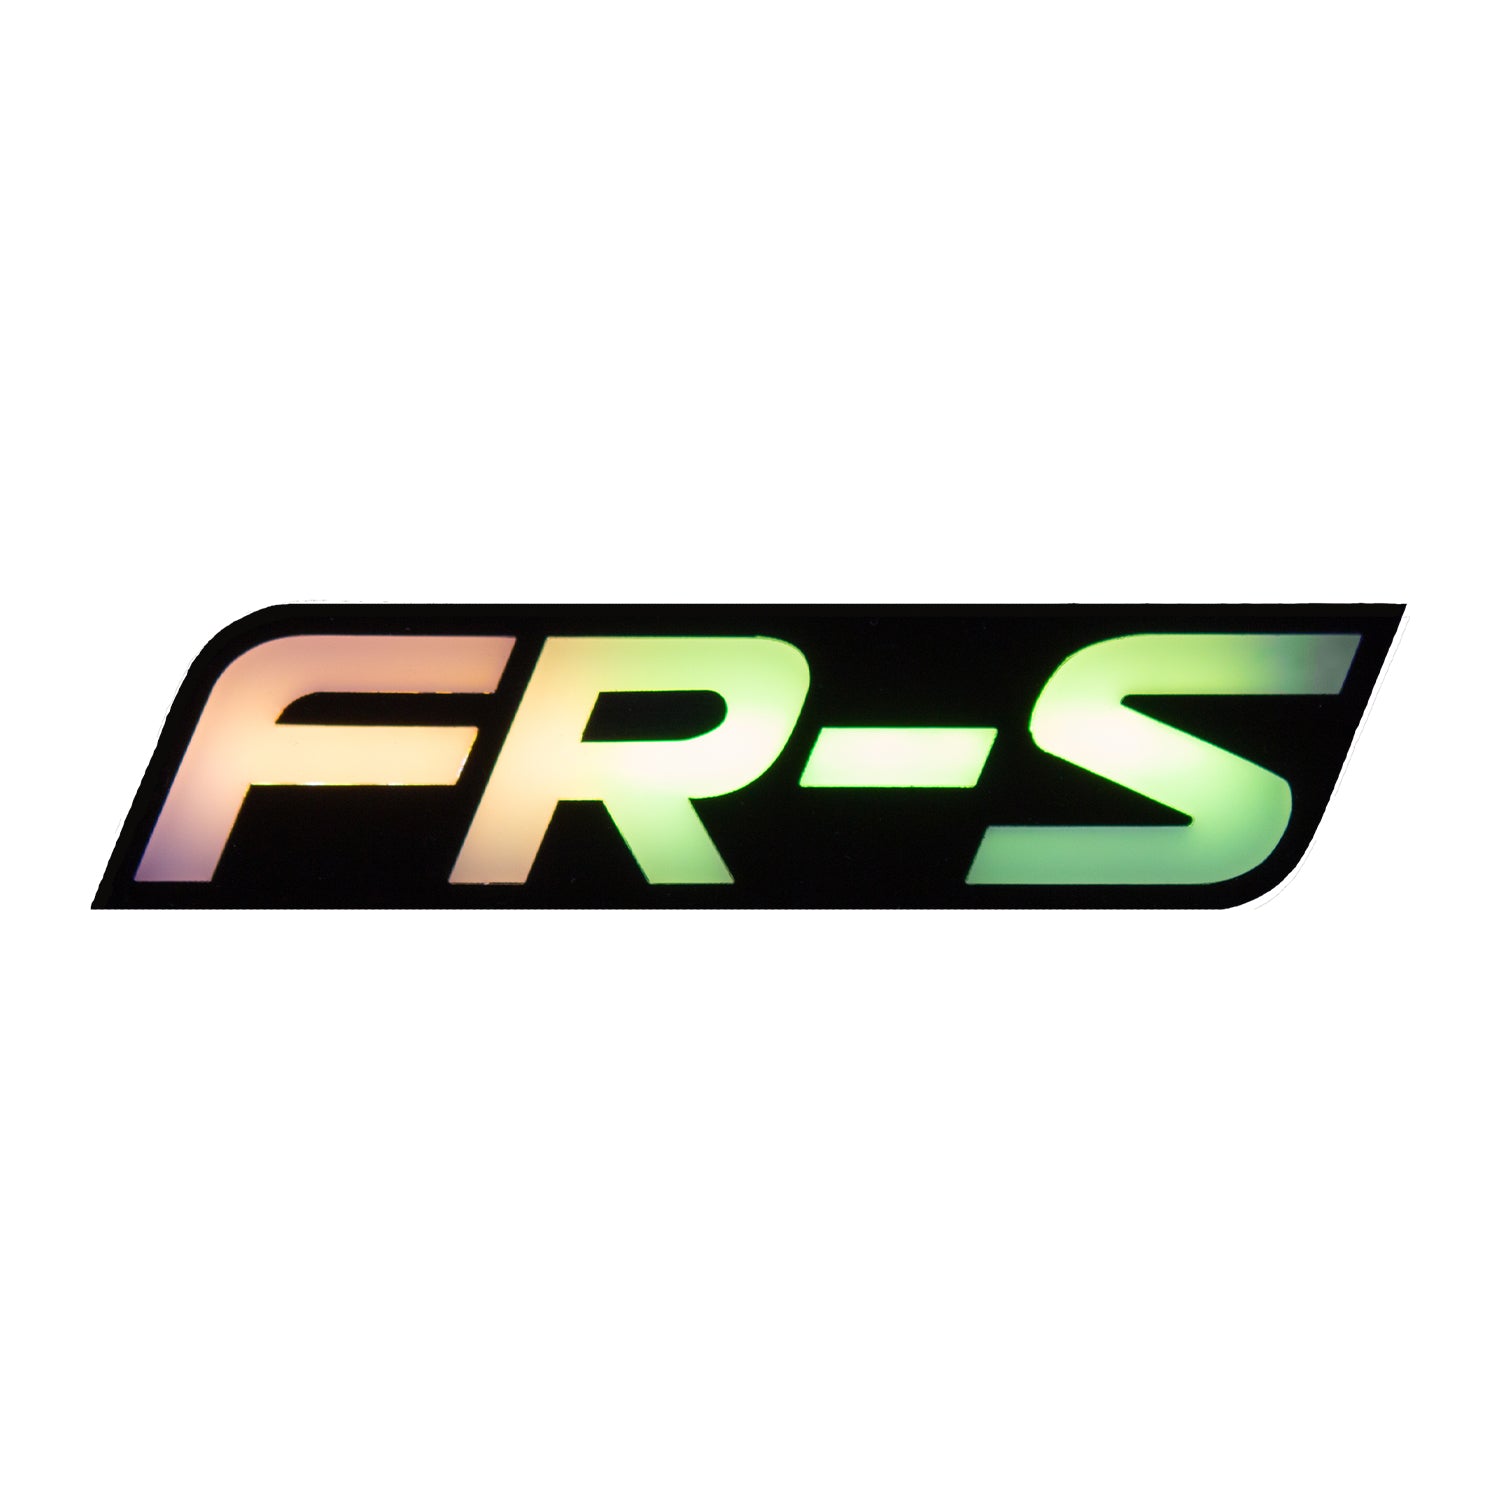 Insignia FRS con logotipos iluminados